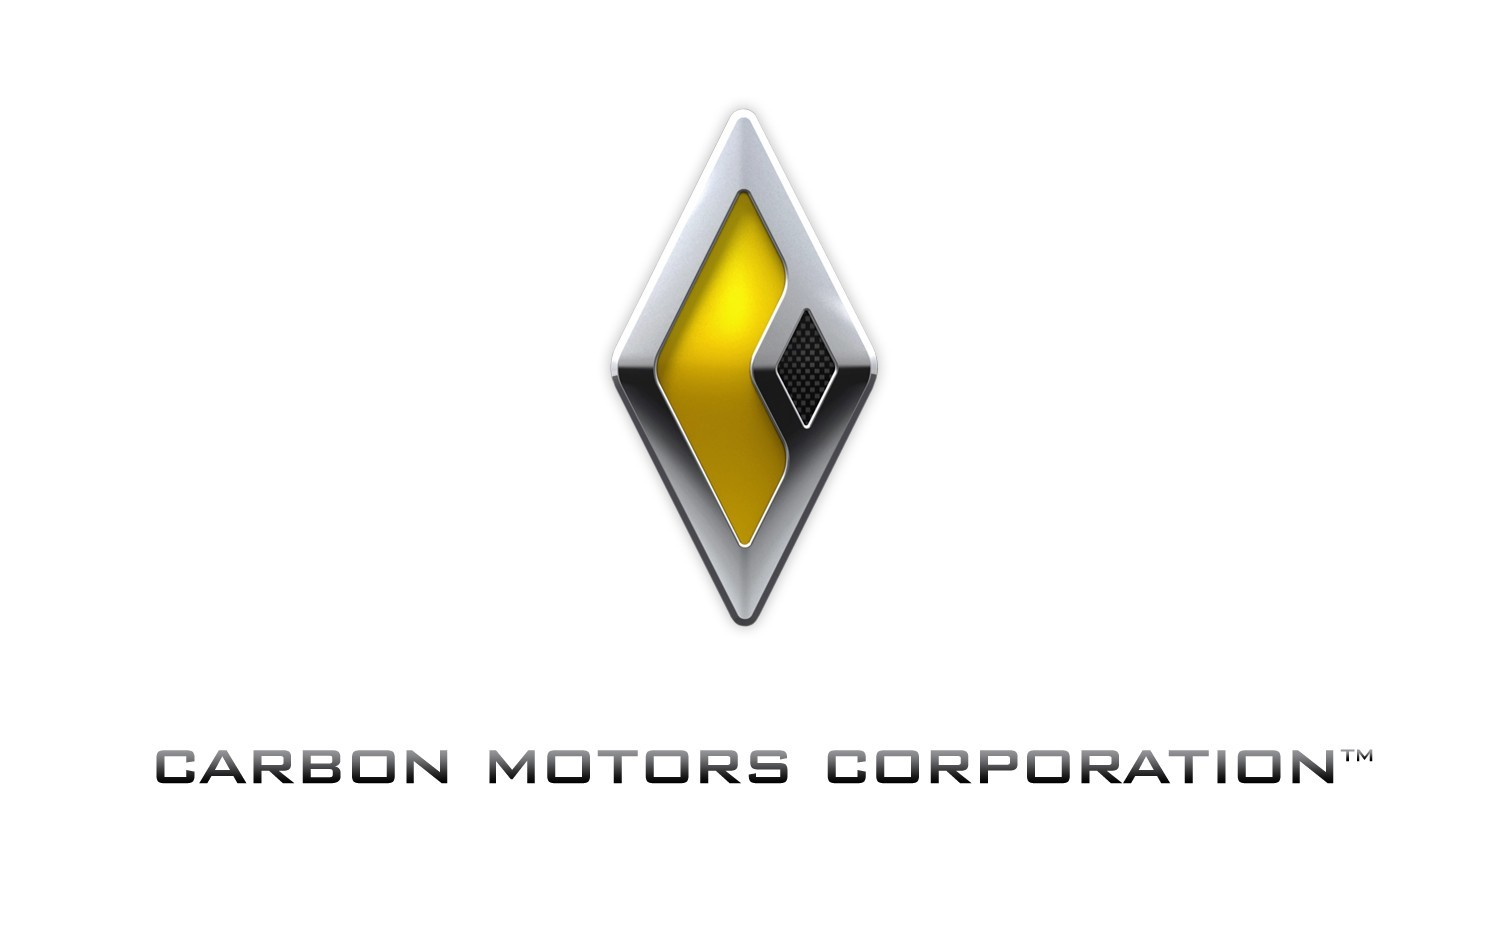 Carbon Motors Corporation Logo [PDF]